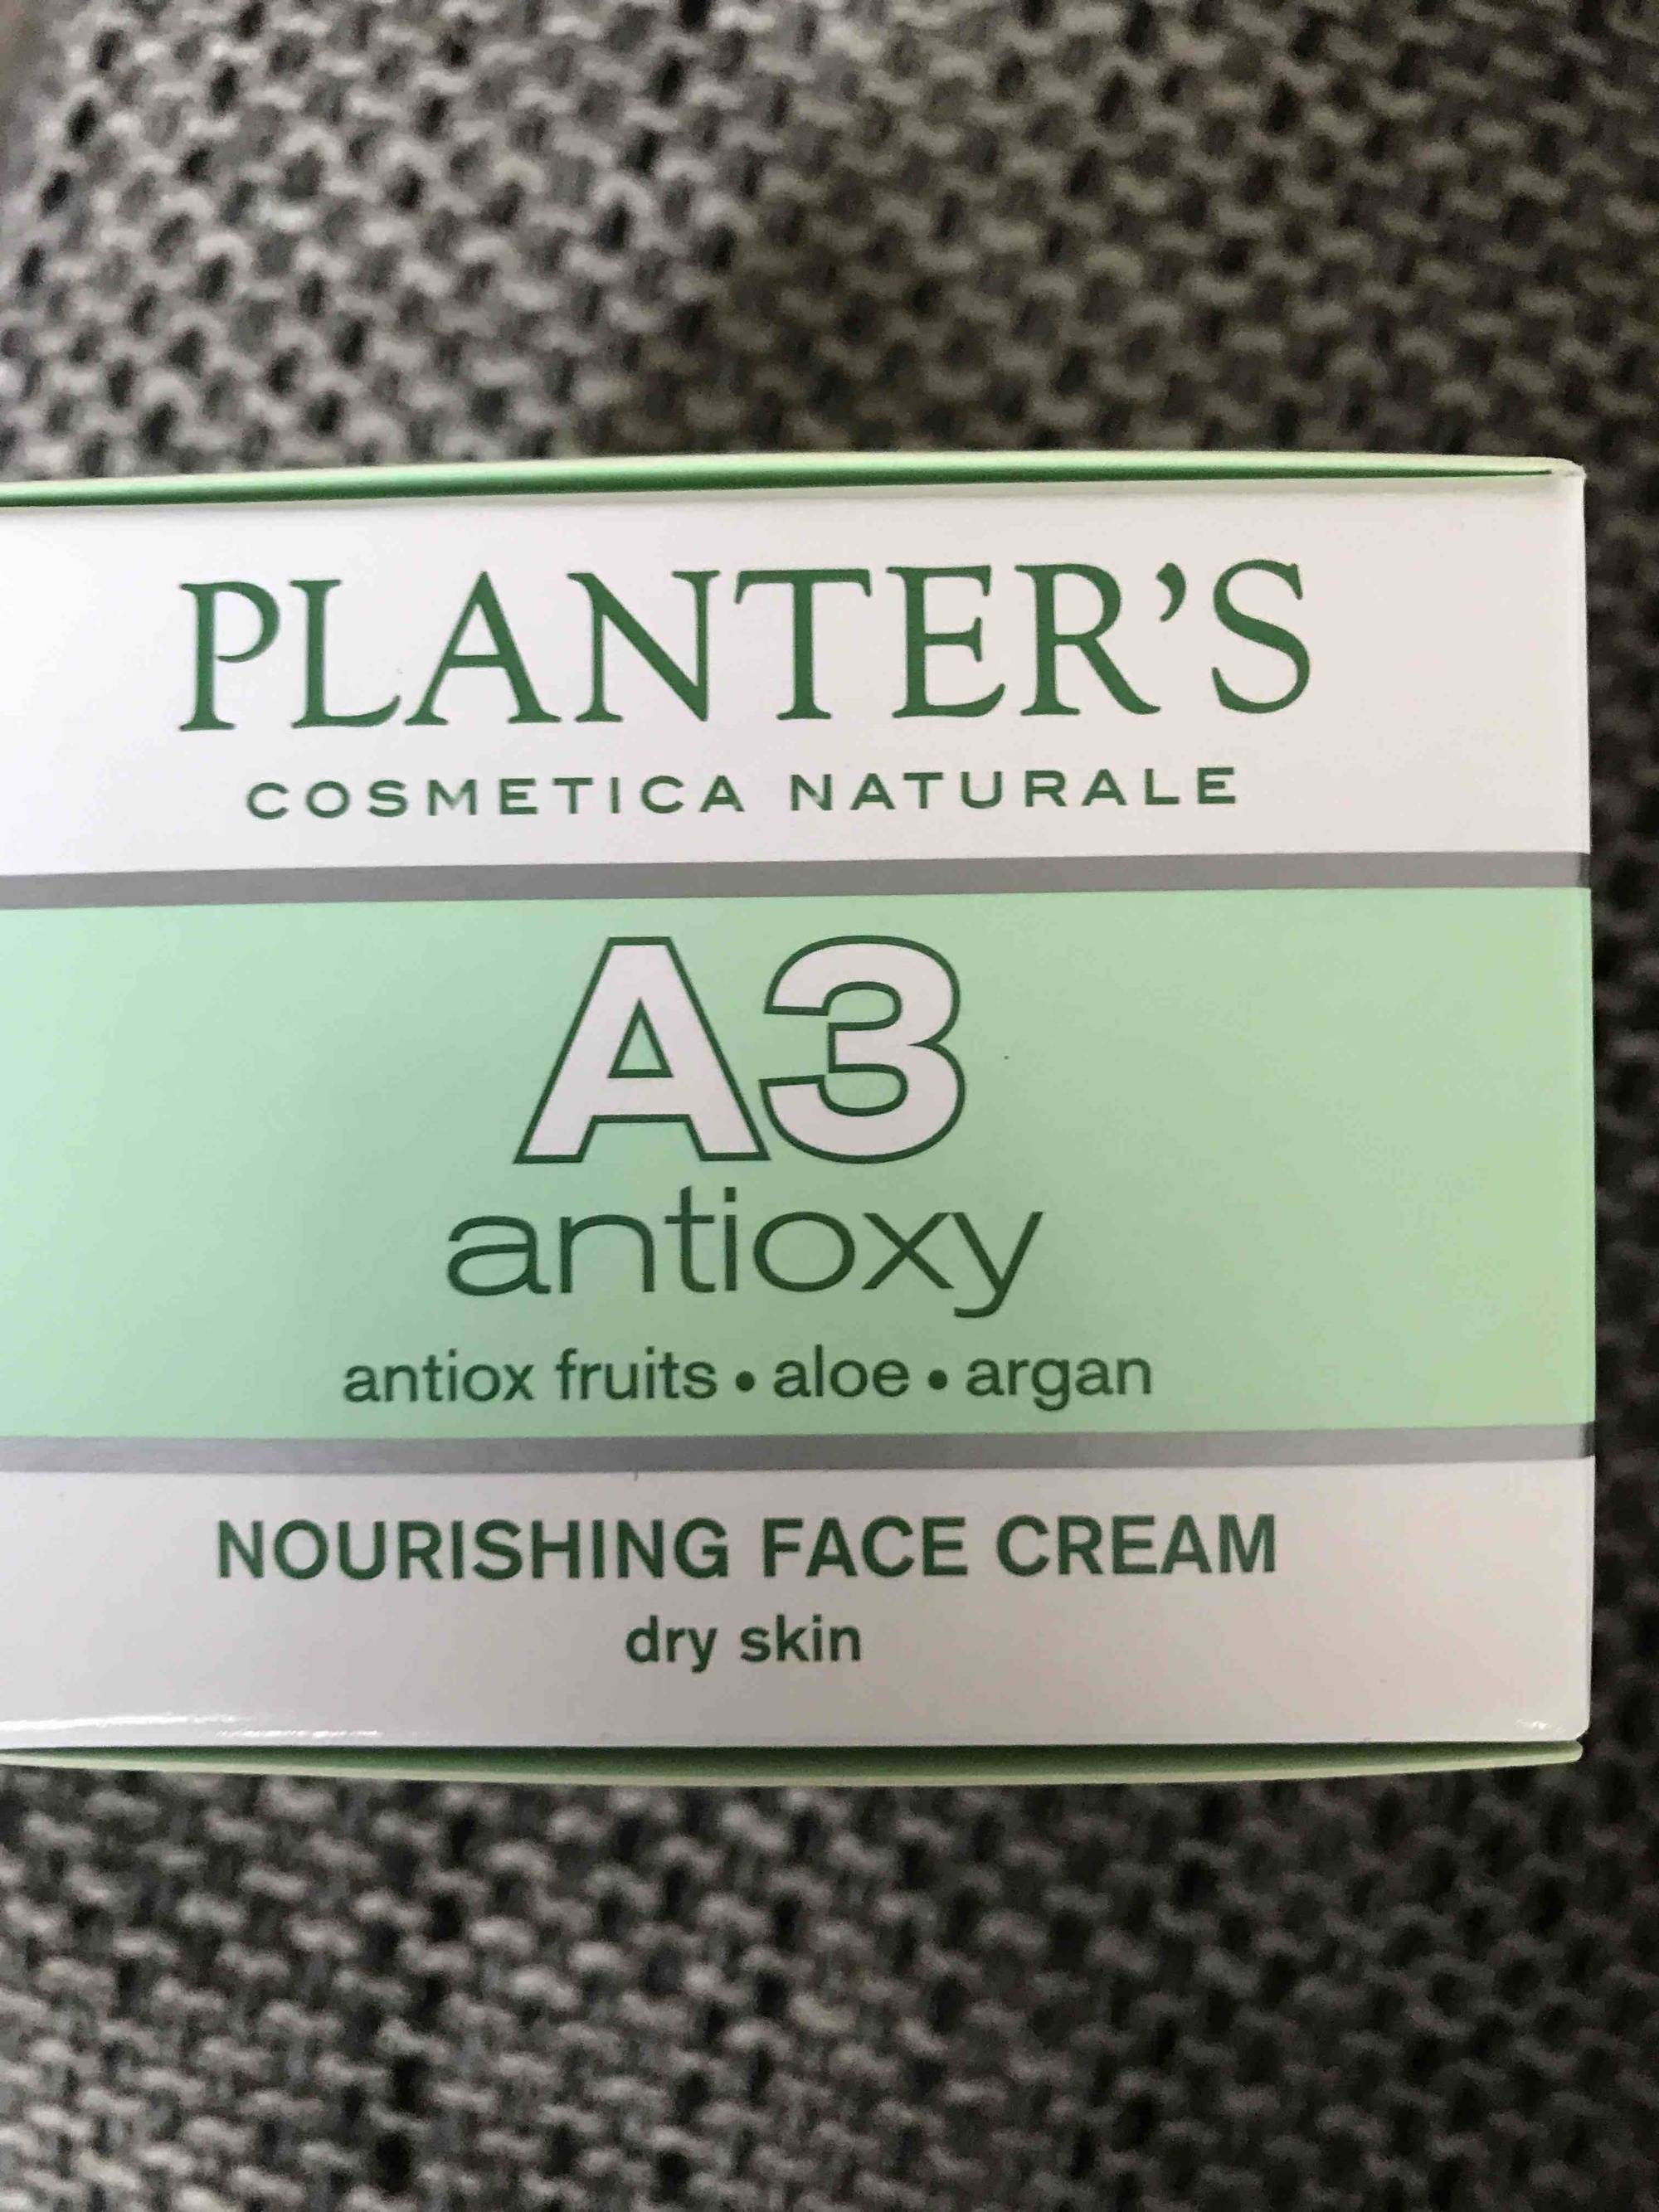 PLANTER'S - A3 antioxy - Nourishing face cream 